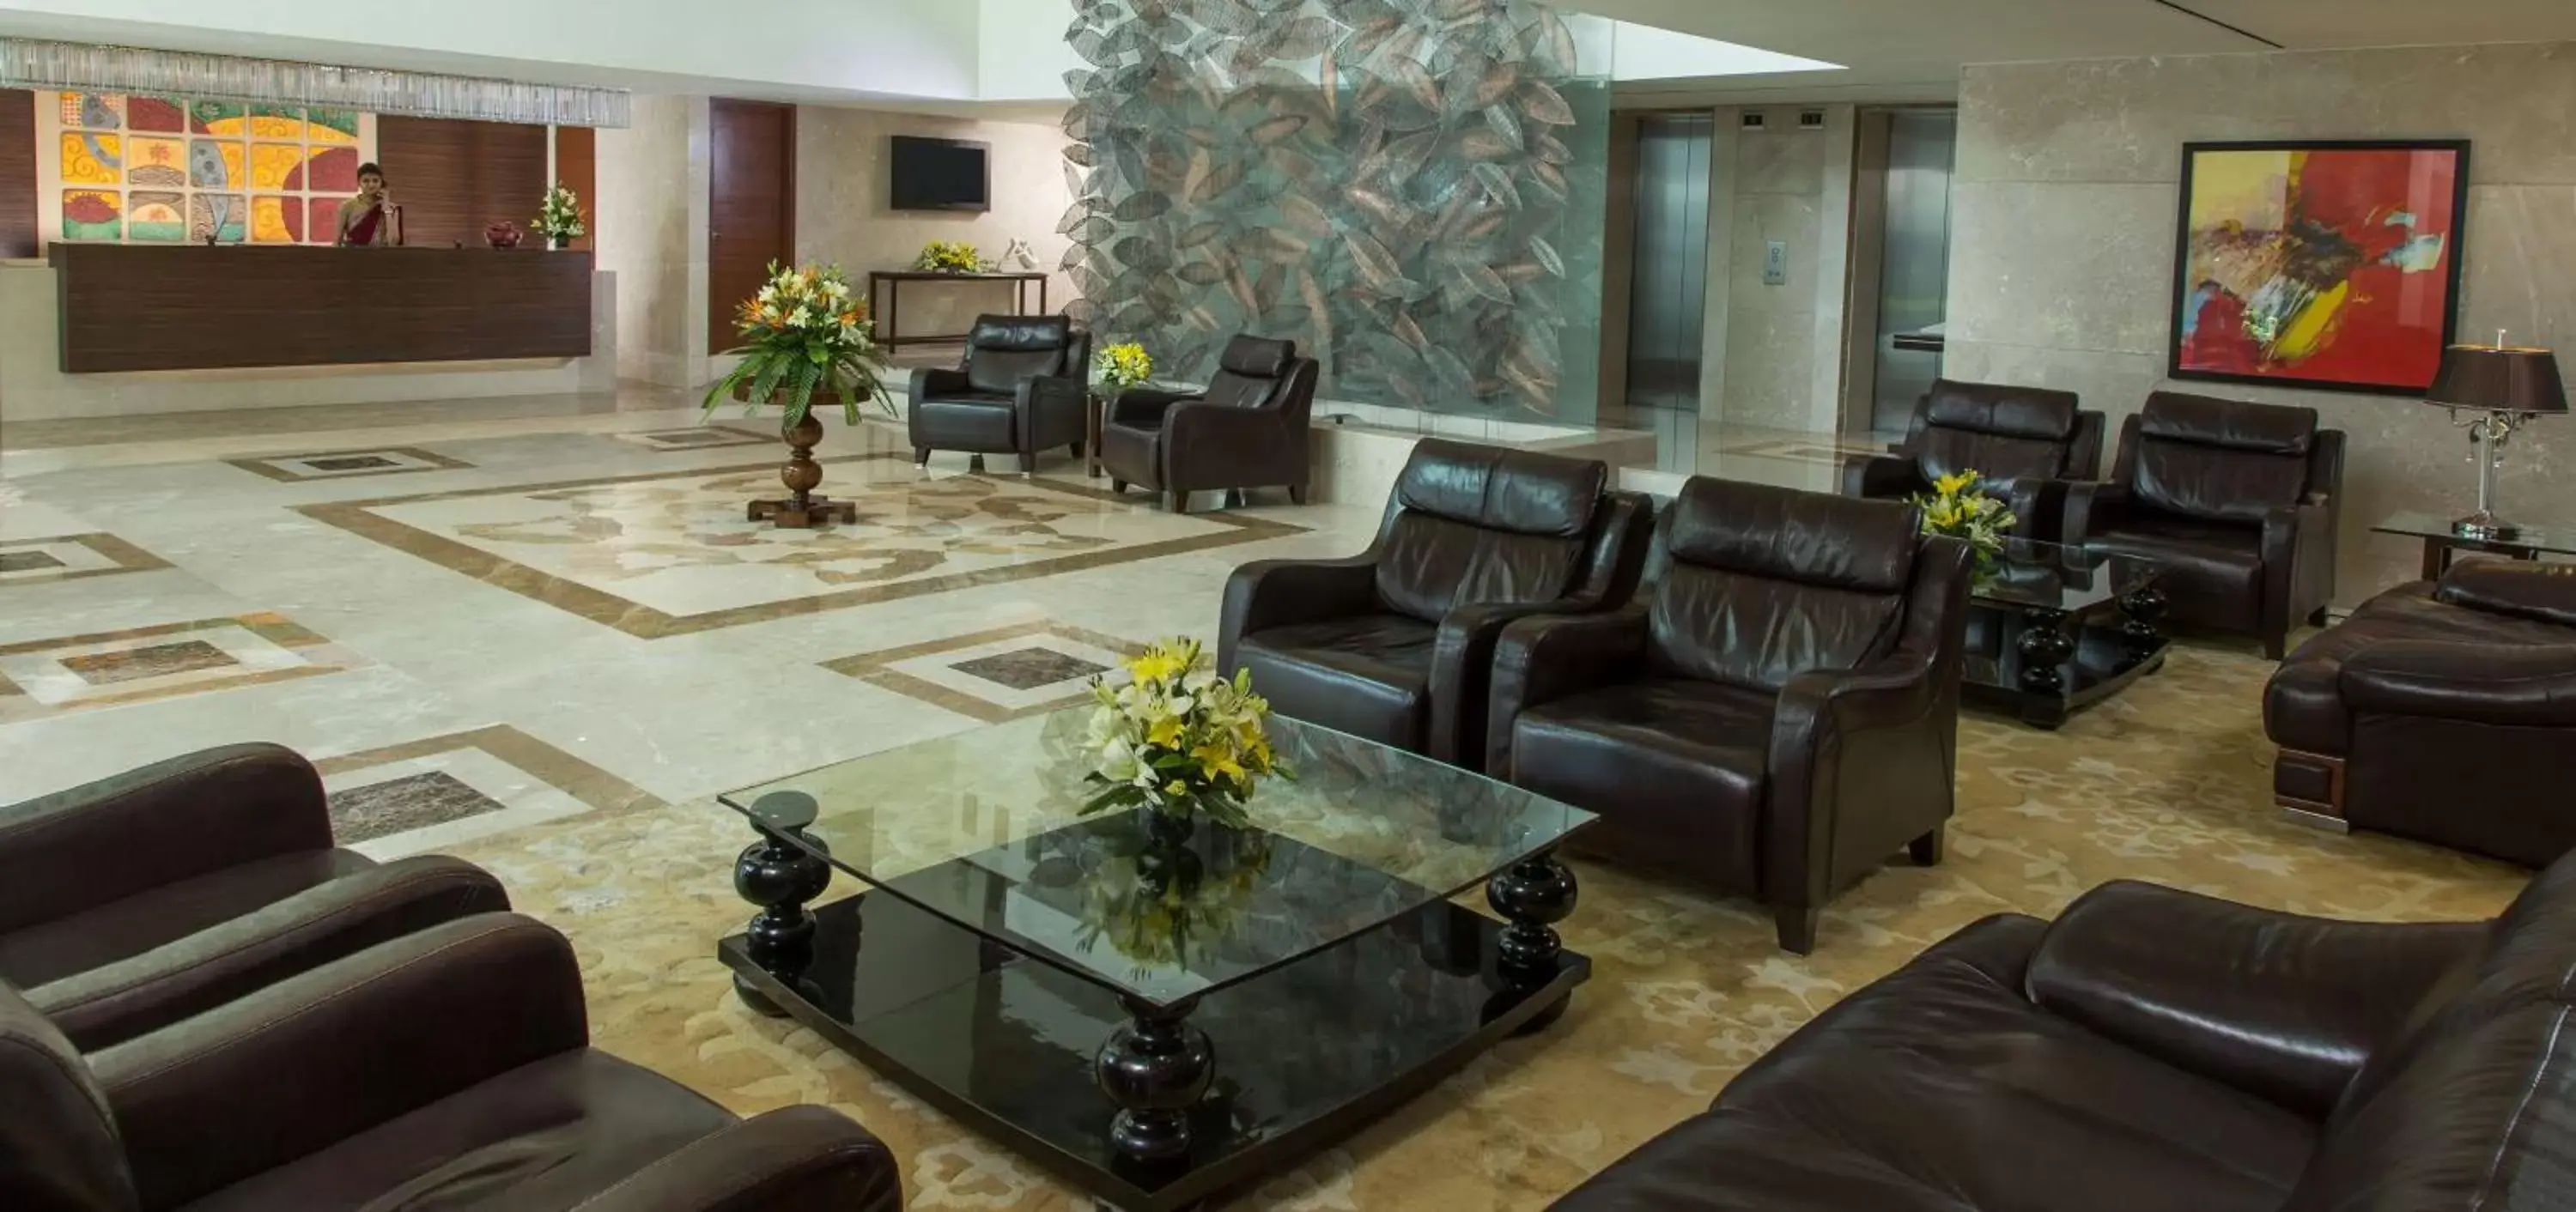 Lobby or reception, Lobby/Reception in Radisson Blu Hotel Ahmedabad